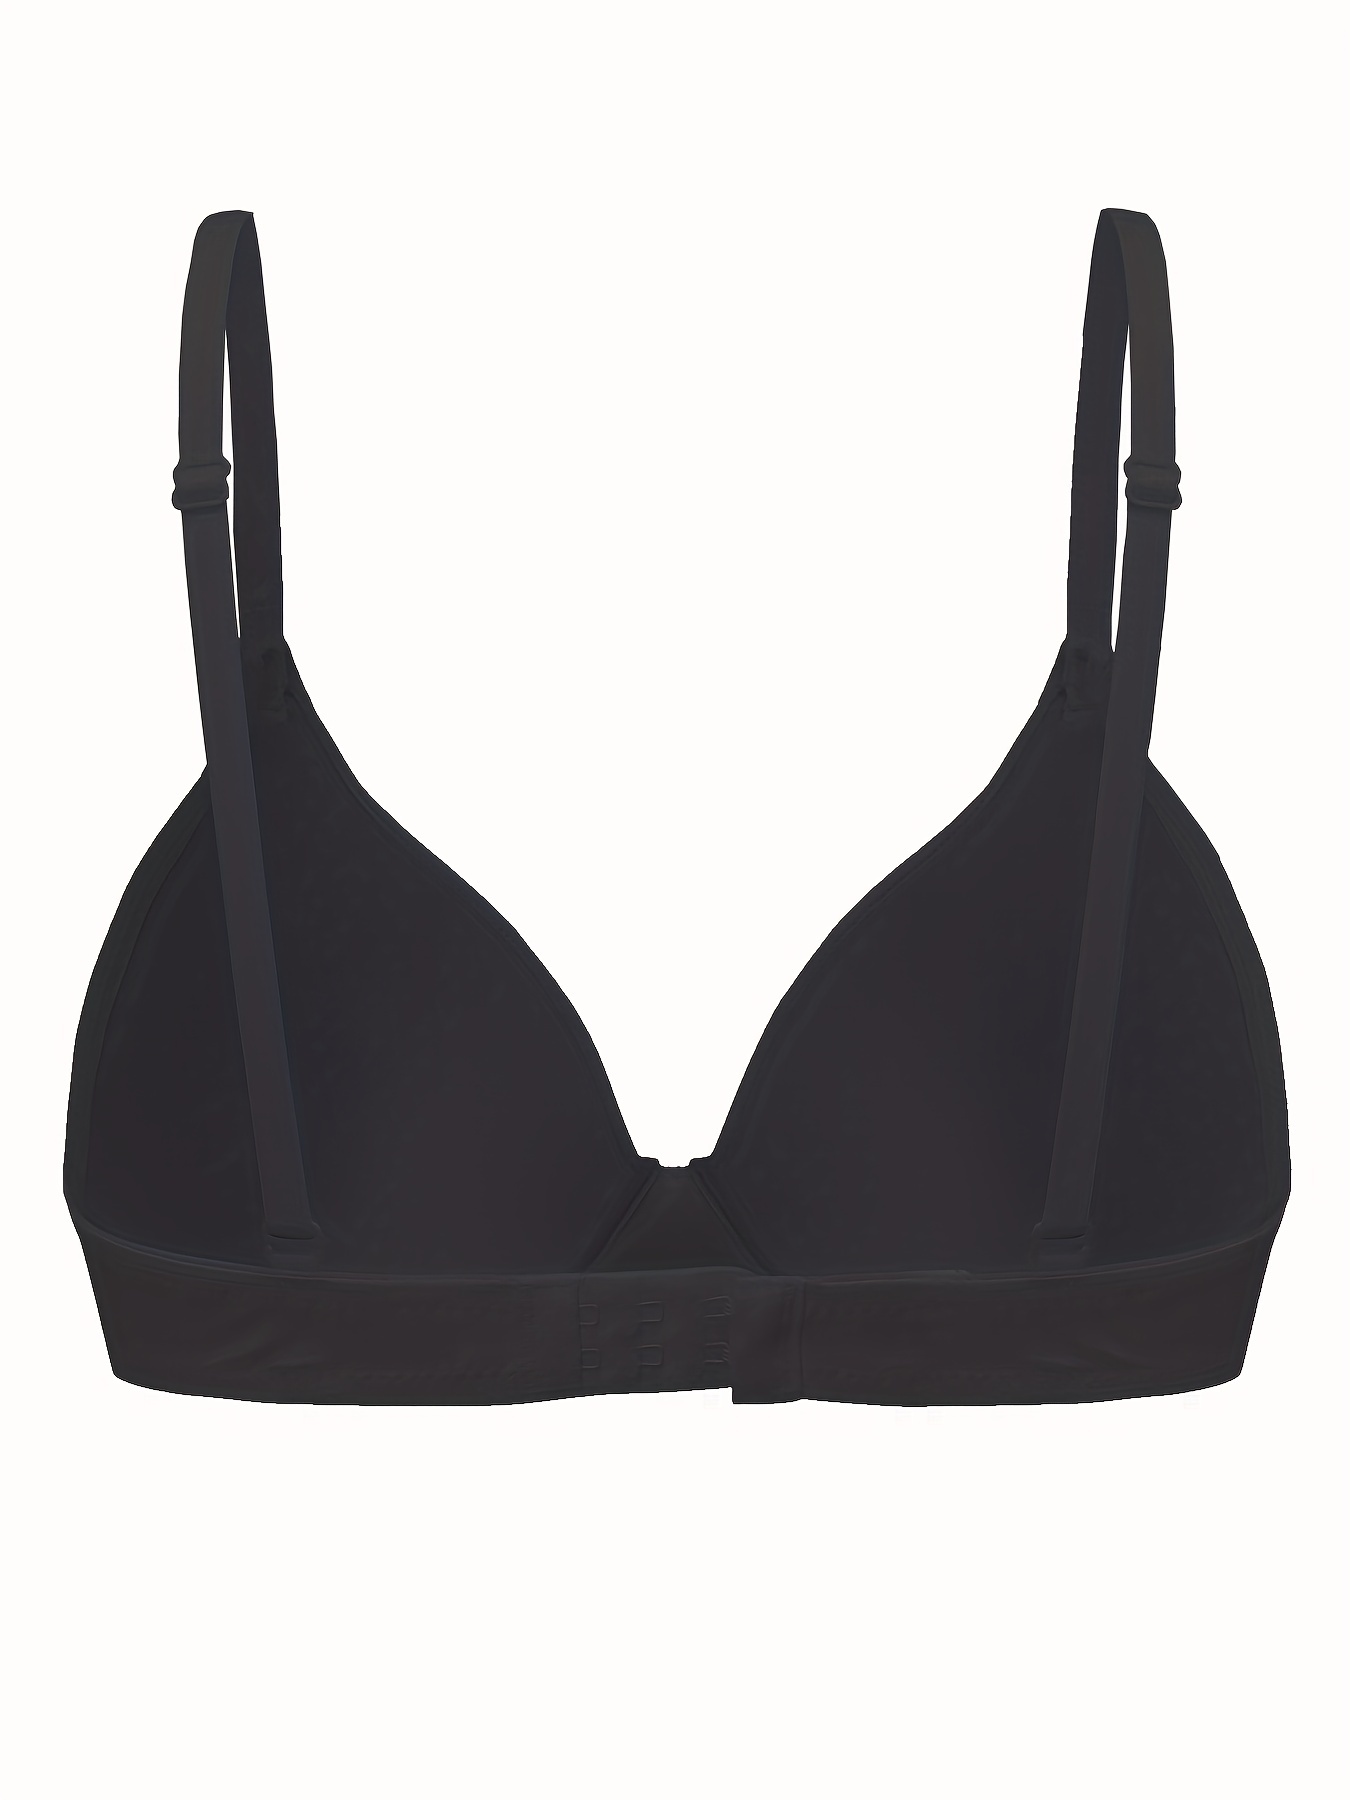 TQWQT Women's Plus Size Bras Push Up Comfort Underwire Brassiere,Black 44E